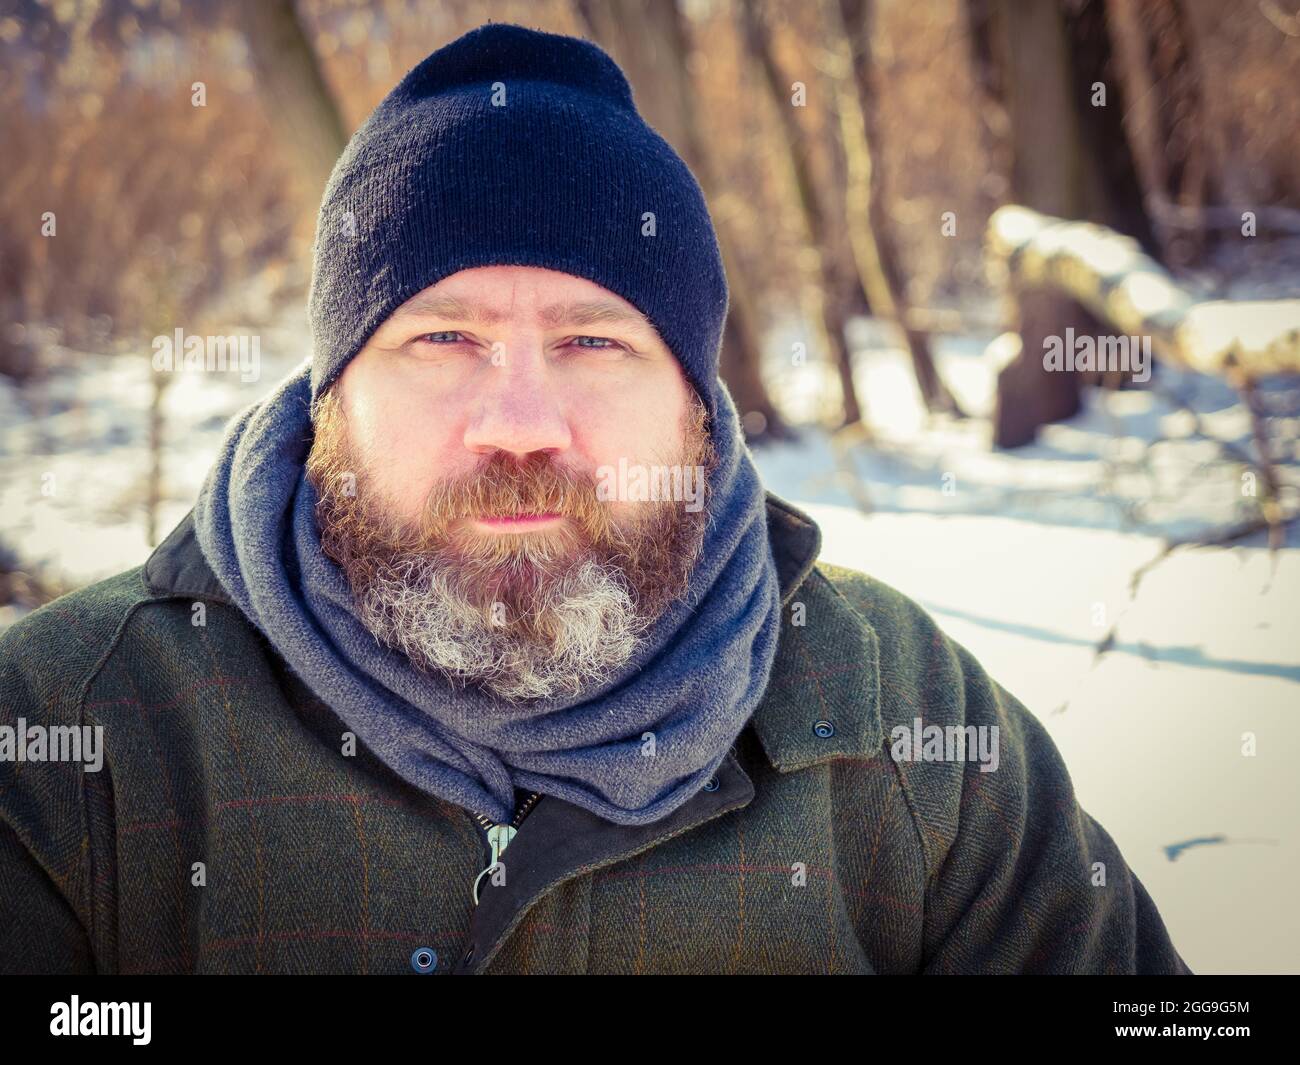 Ritratto all'aperto di uomo europeo adulto in inverno. Uomo bearded che si distende sulla passeggiata di inverno nella foresta nevosa, cattura candid, scena di lifestyle Foto Stock